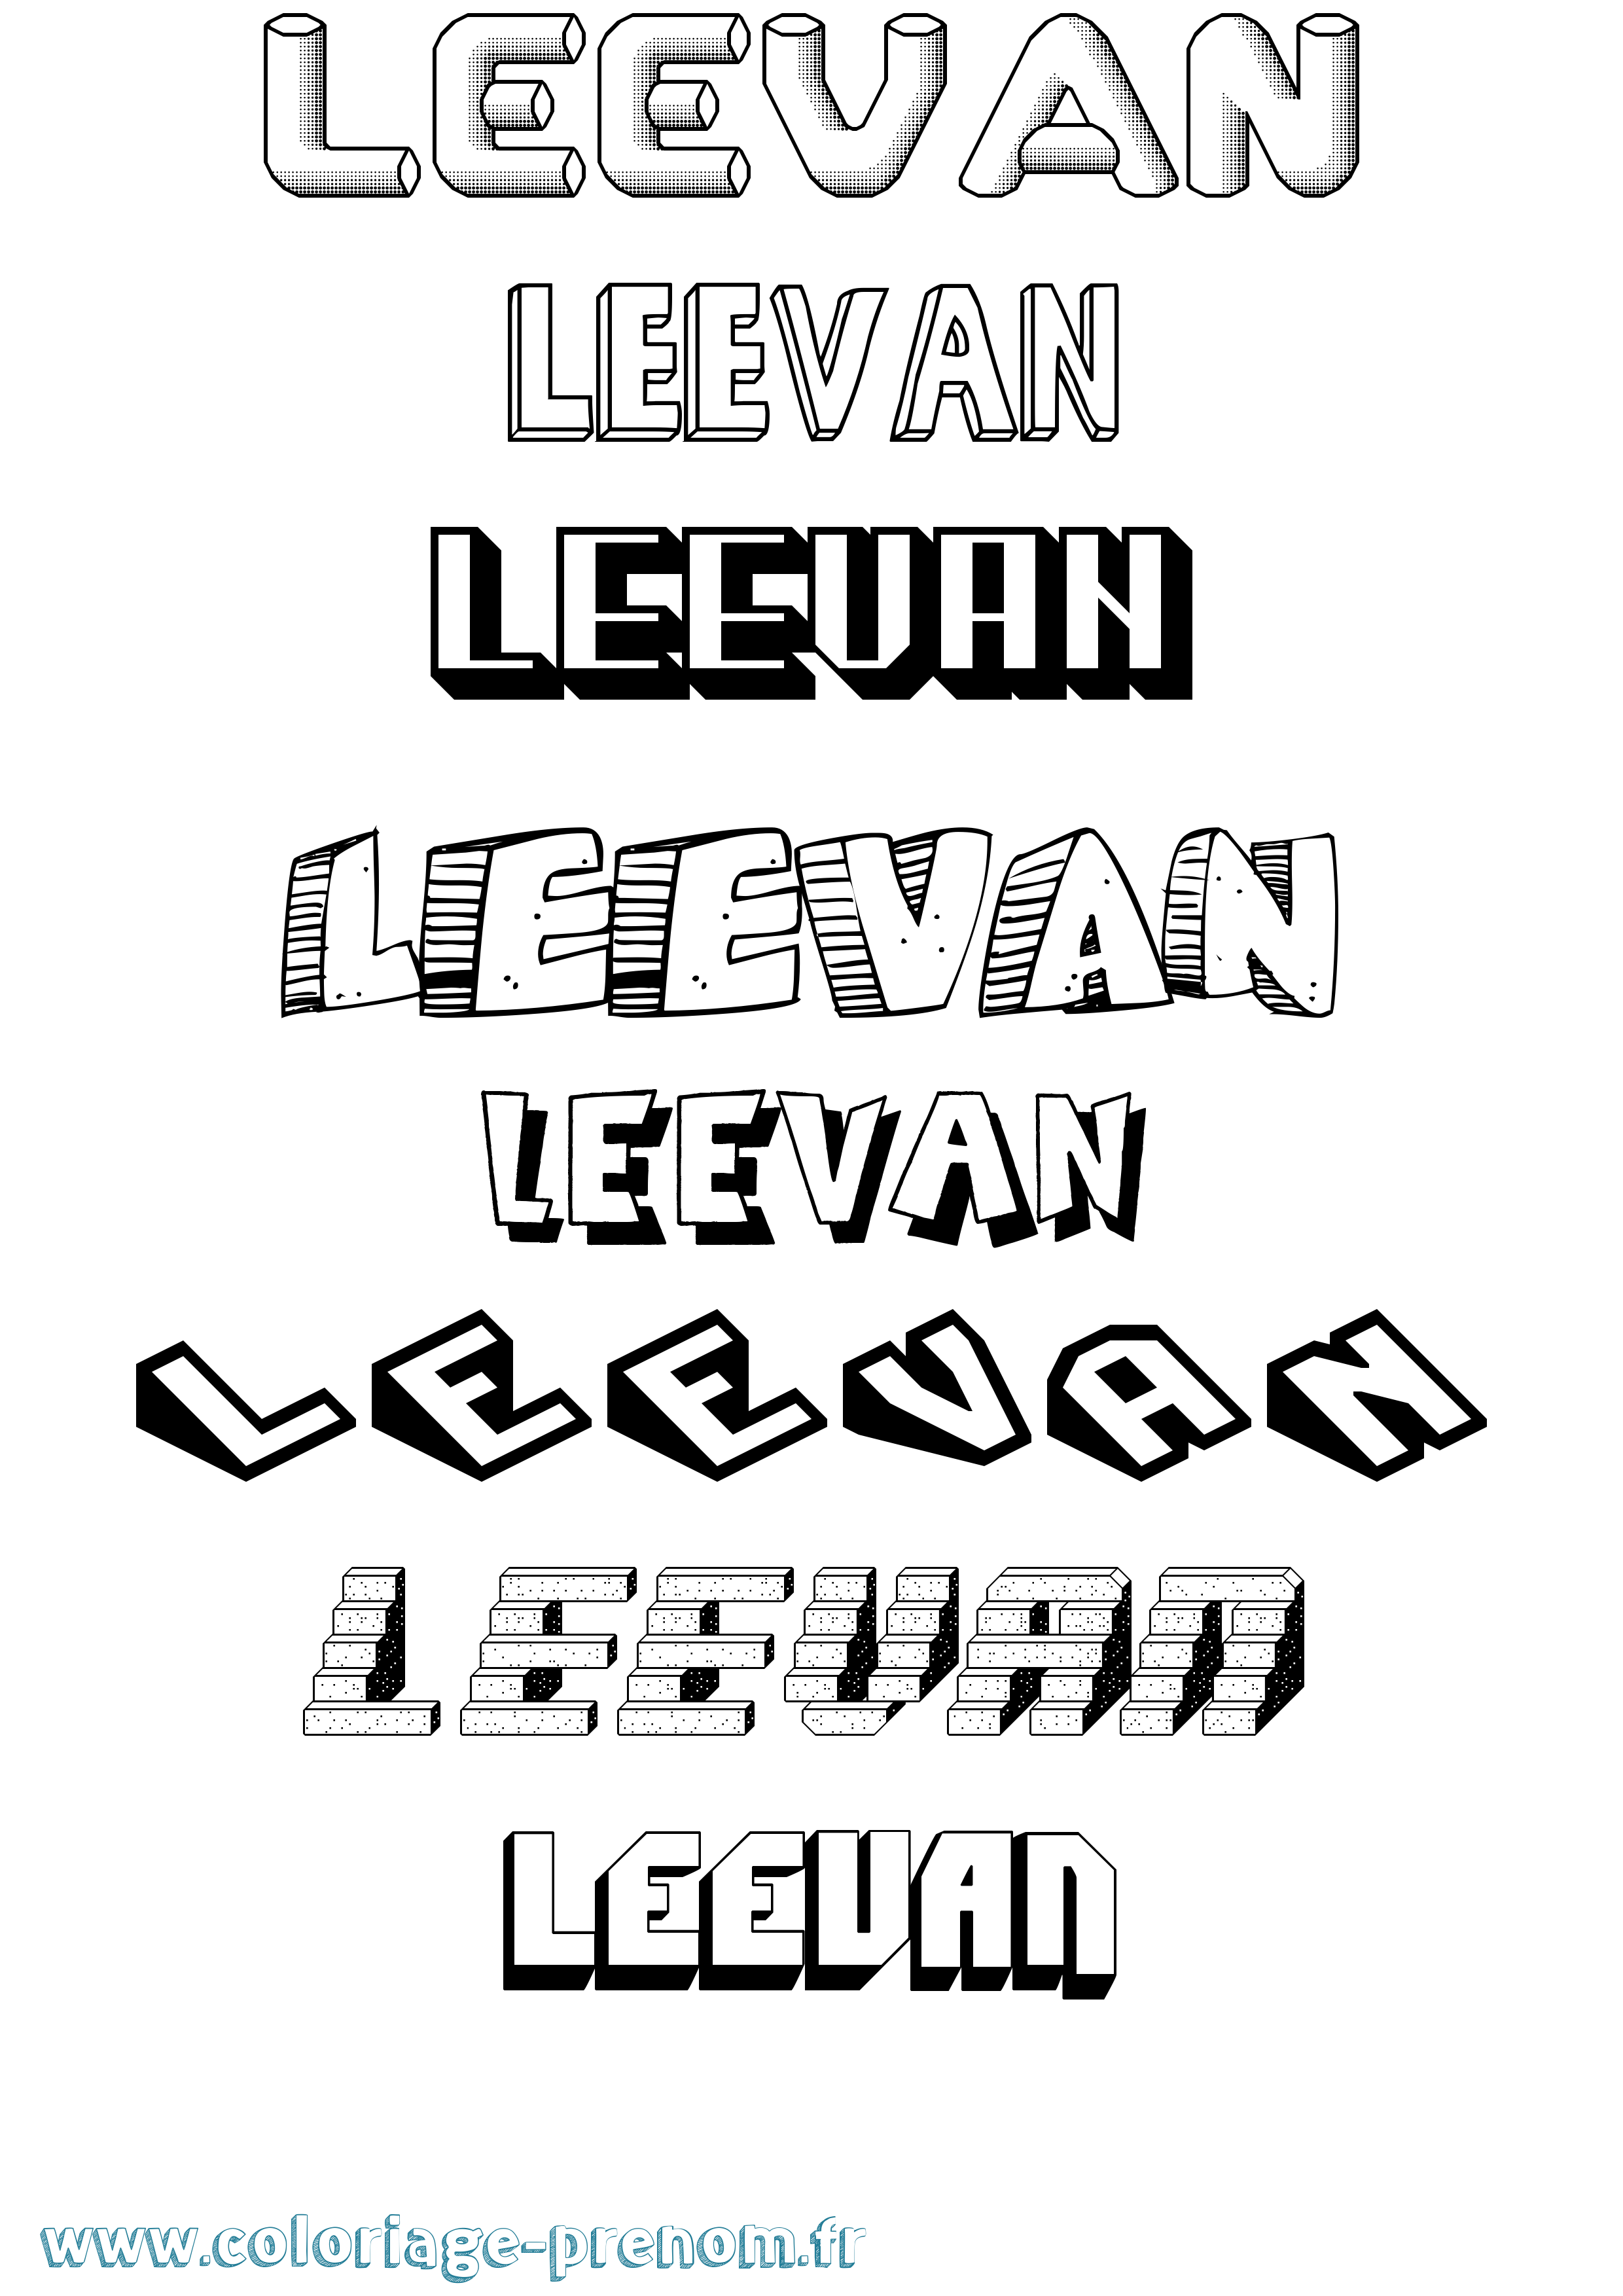 Coloriage prénom Leevan Effet 3D